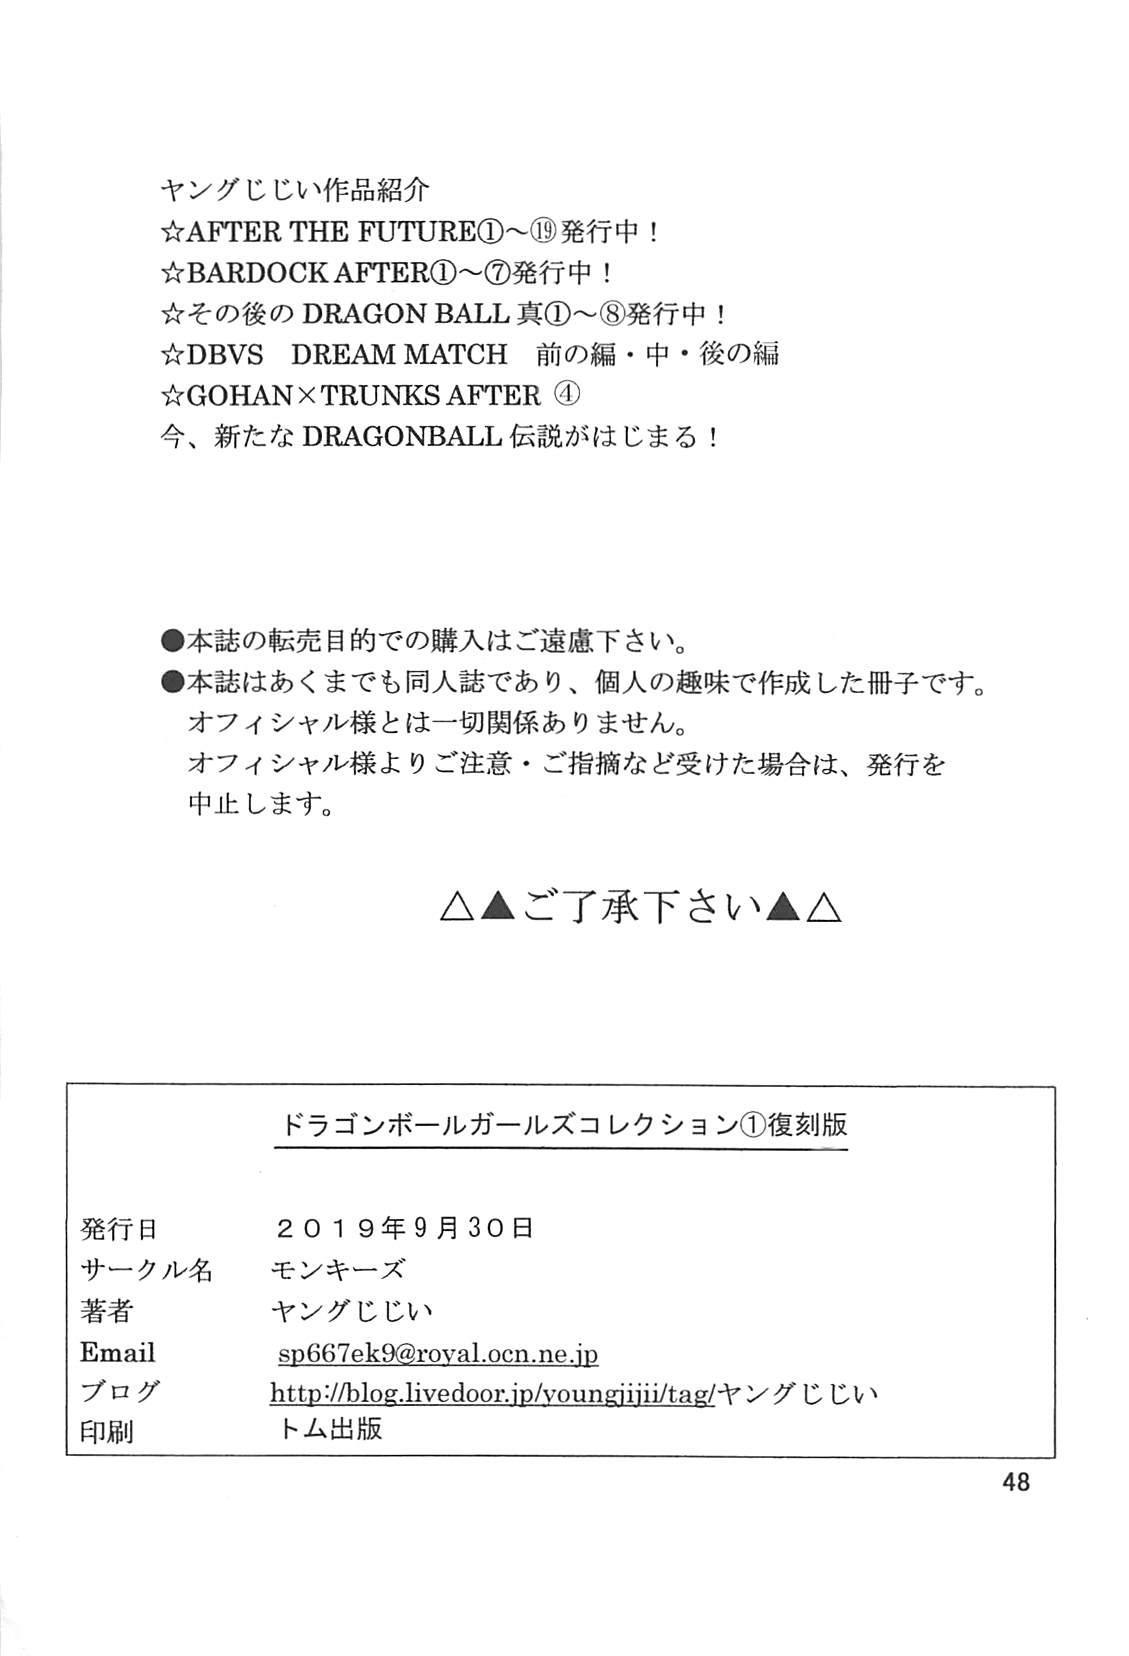 Bucetinha Dragon Ball Girls Collection 1 Fukkokuban - Dragon ball z Stepbro - Page 47